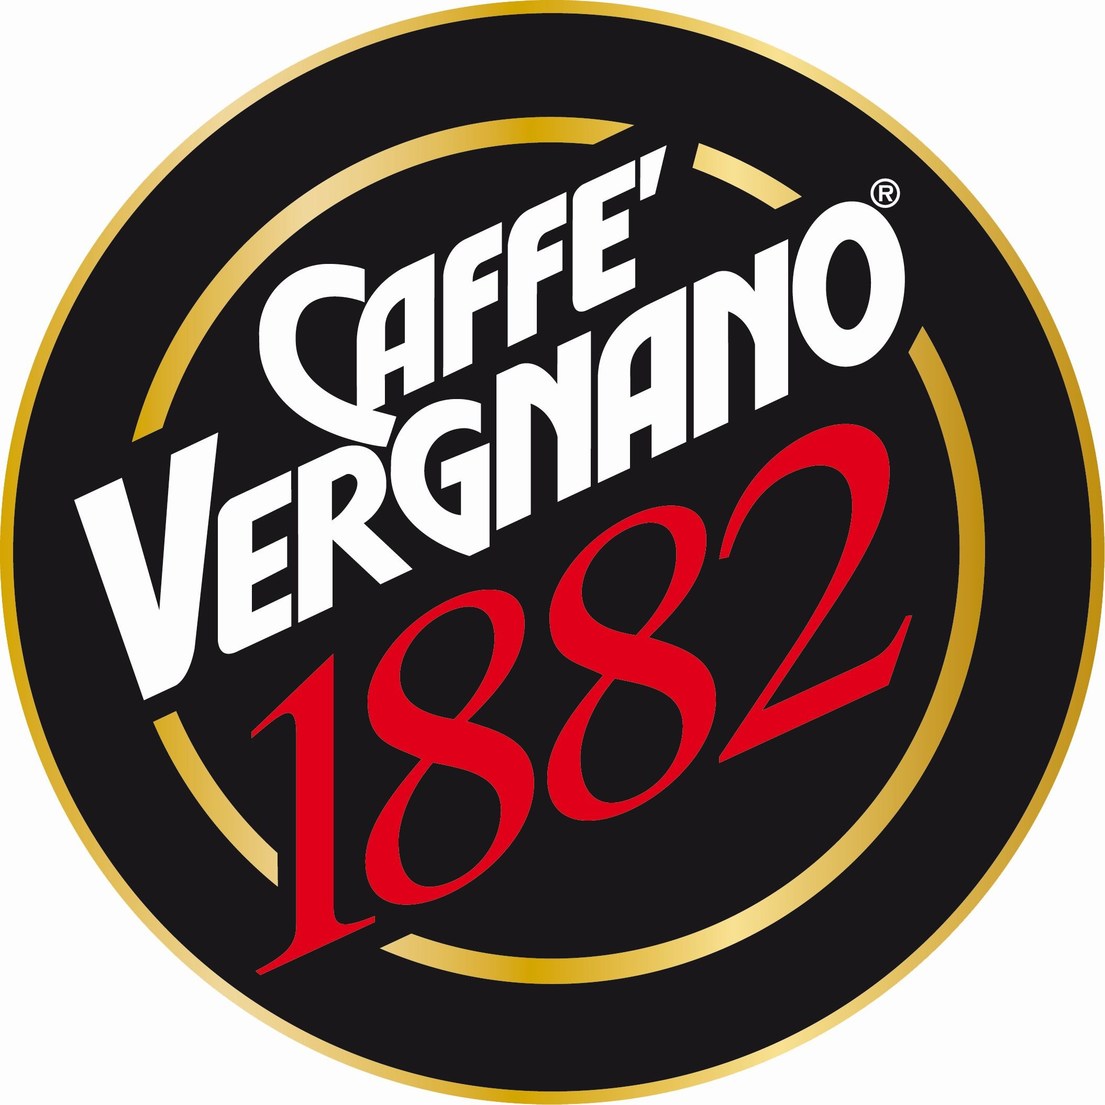 Caffe Vergnano Company Profile by Atalanta Corp. - Issuu